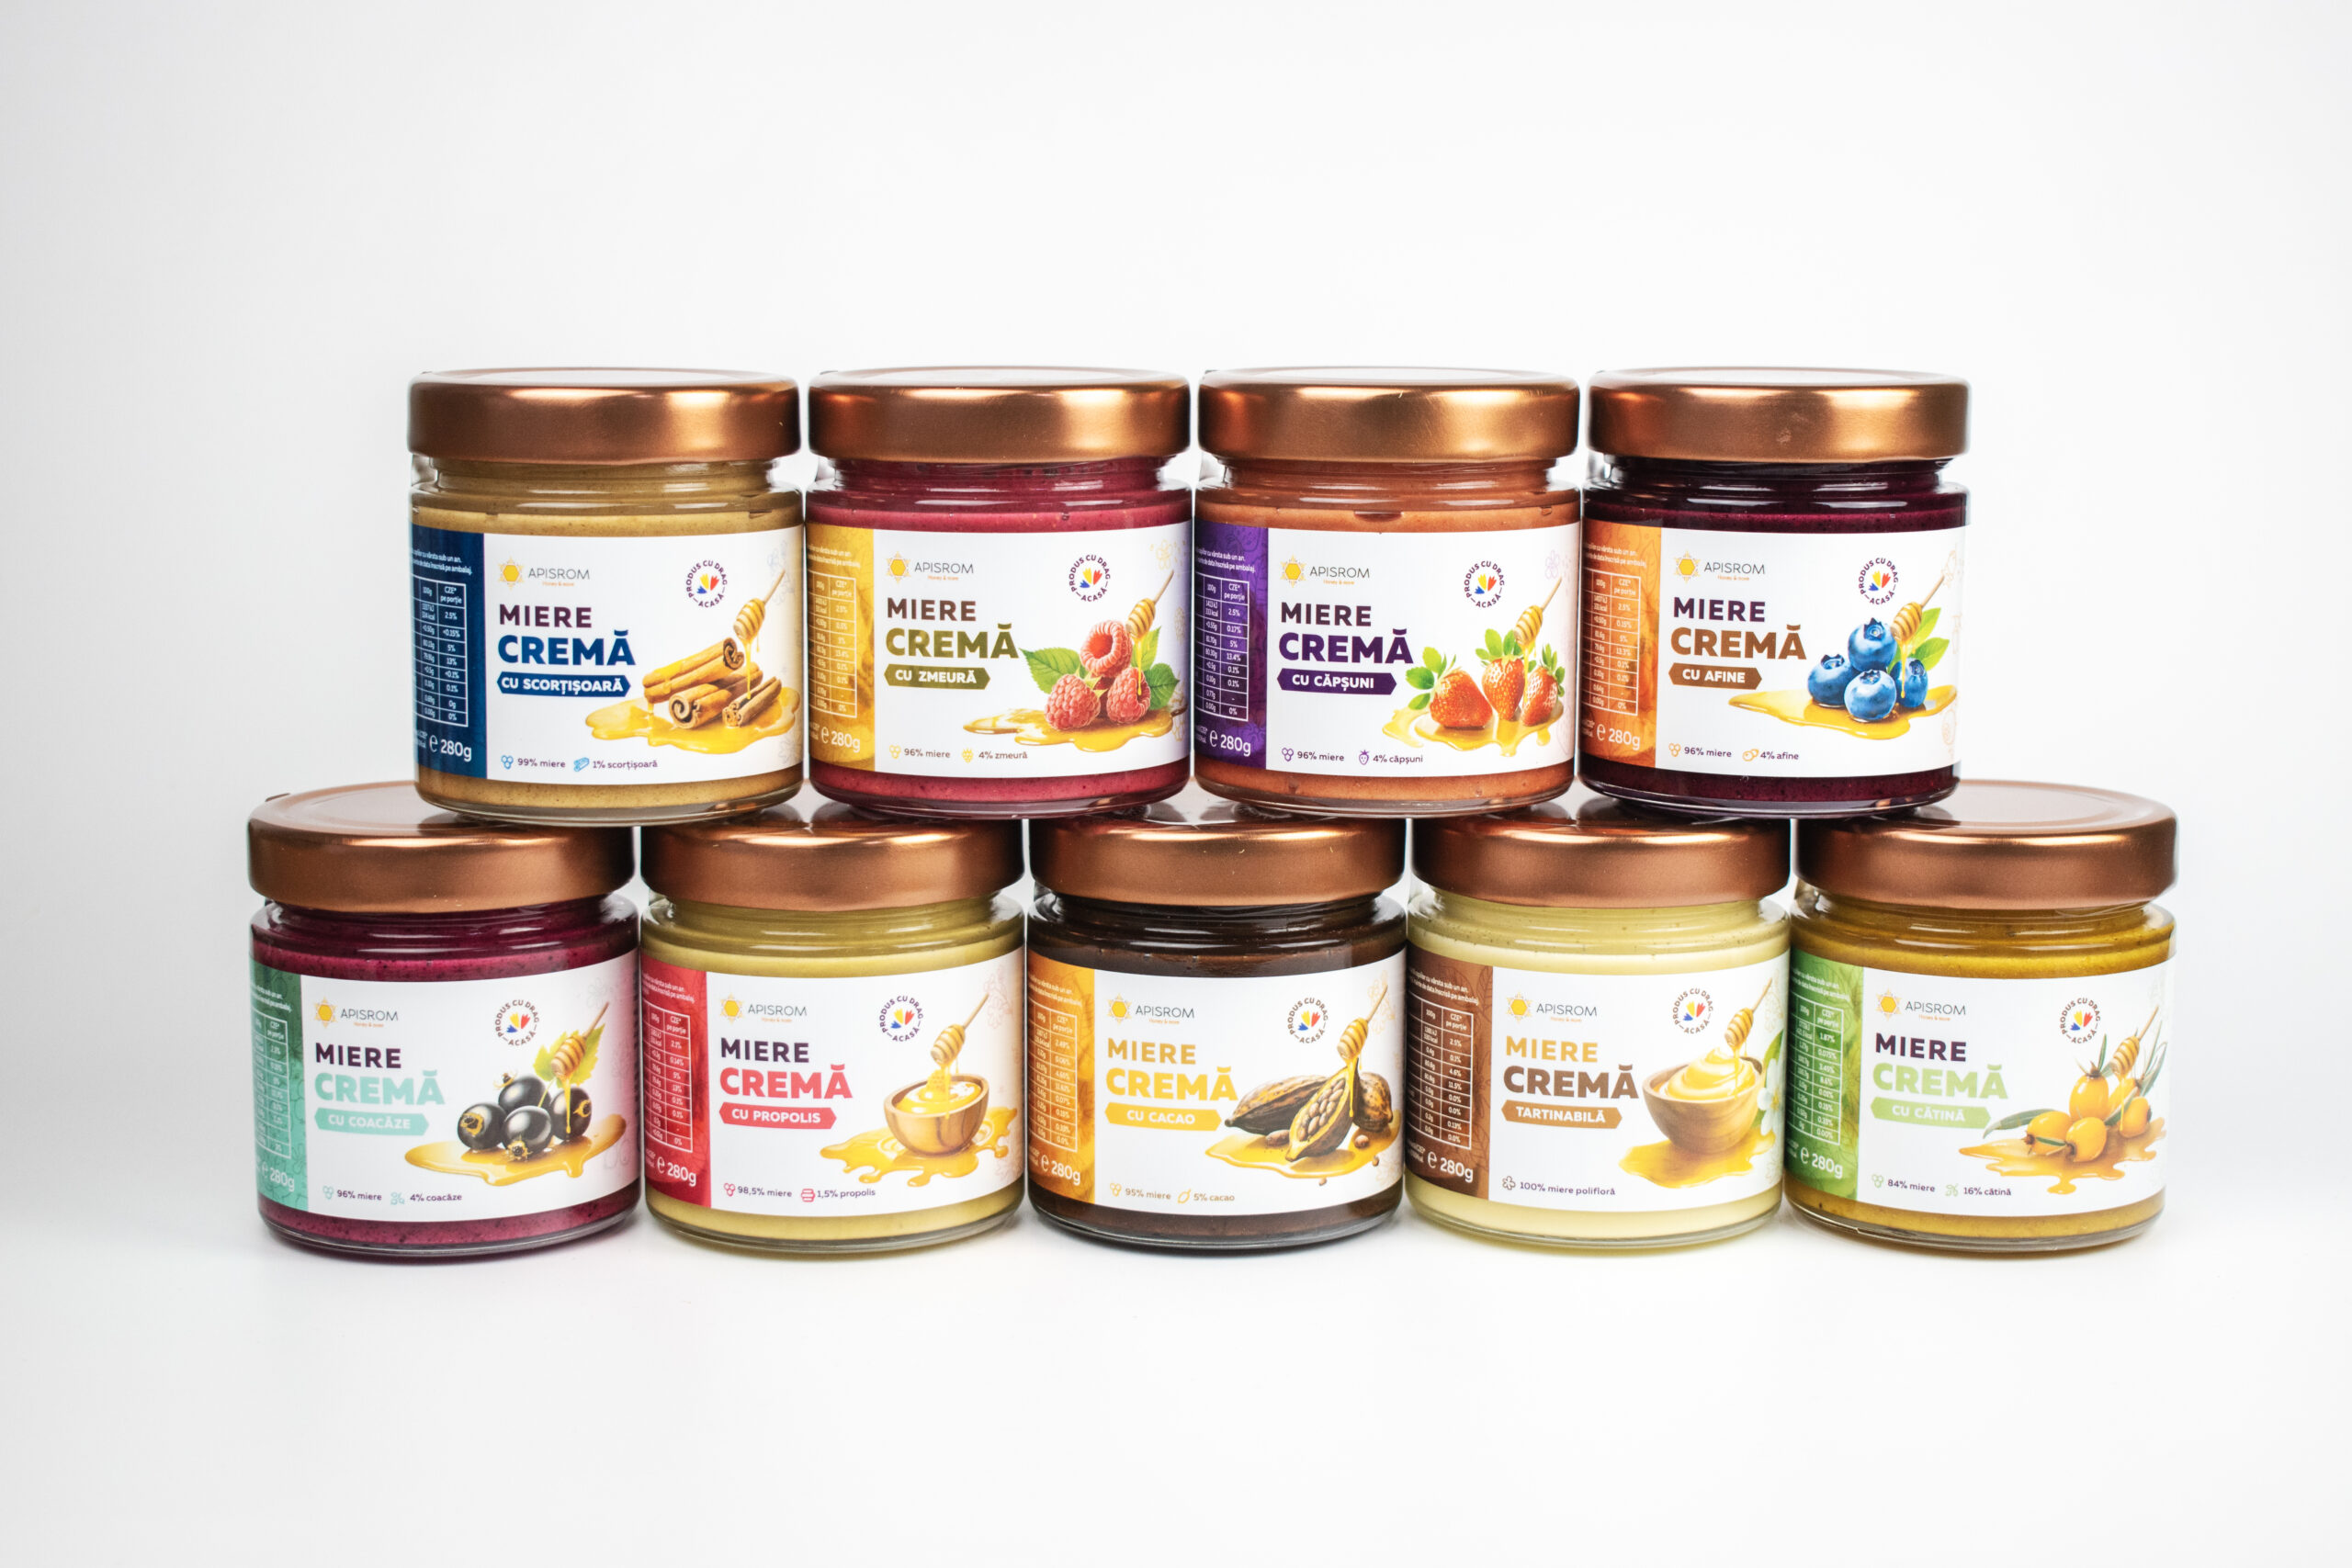 Gama miere cremă este una dintre cele mai populare în rândul produselor Apisrom (Sursă foto: arhiva companiei)